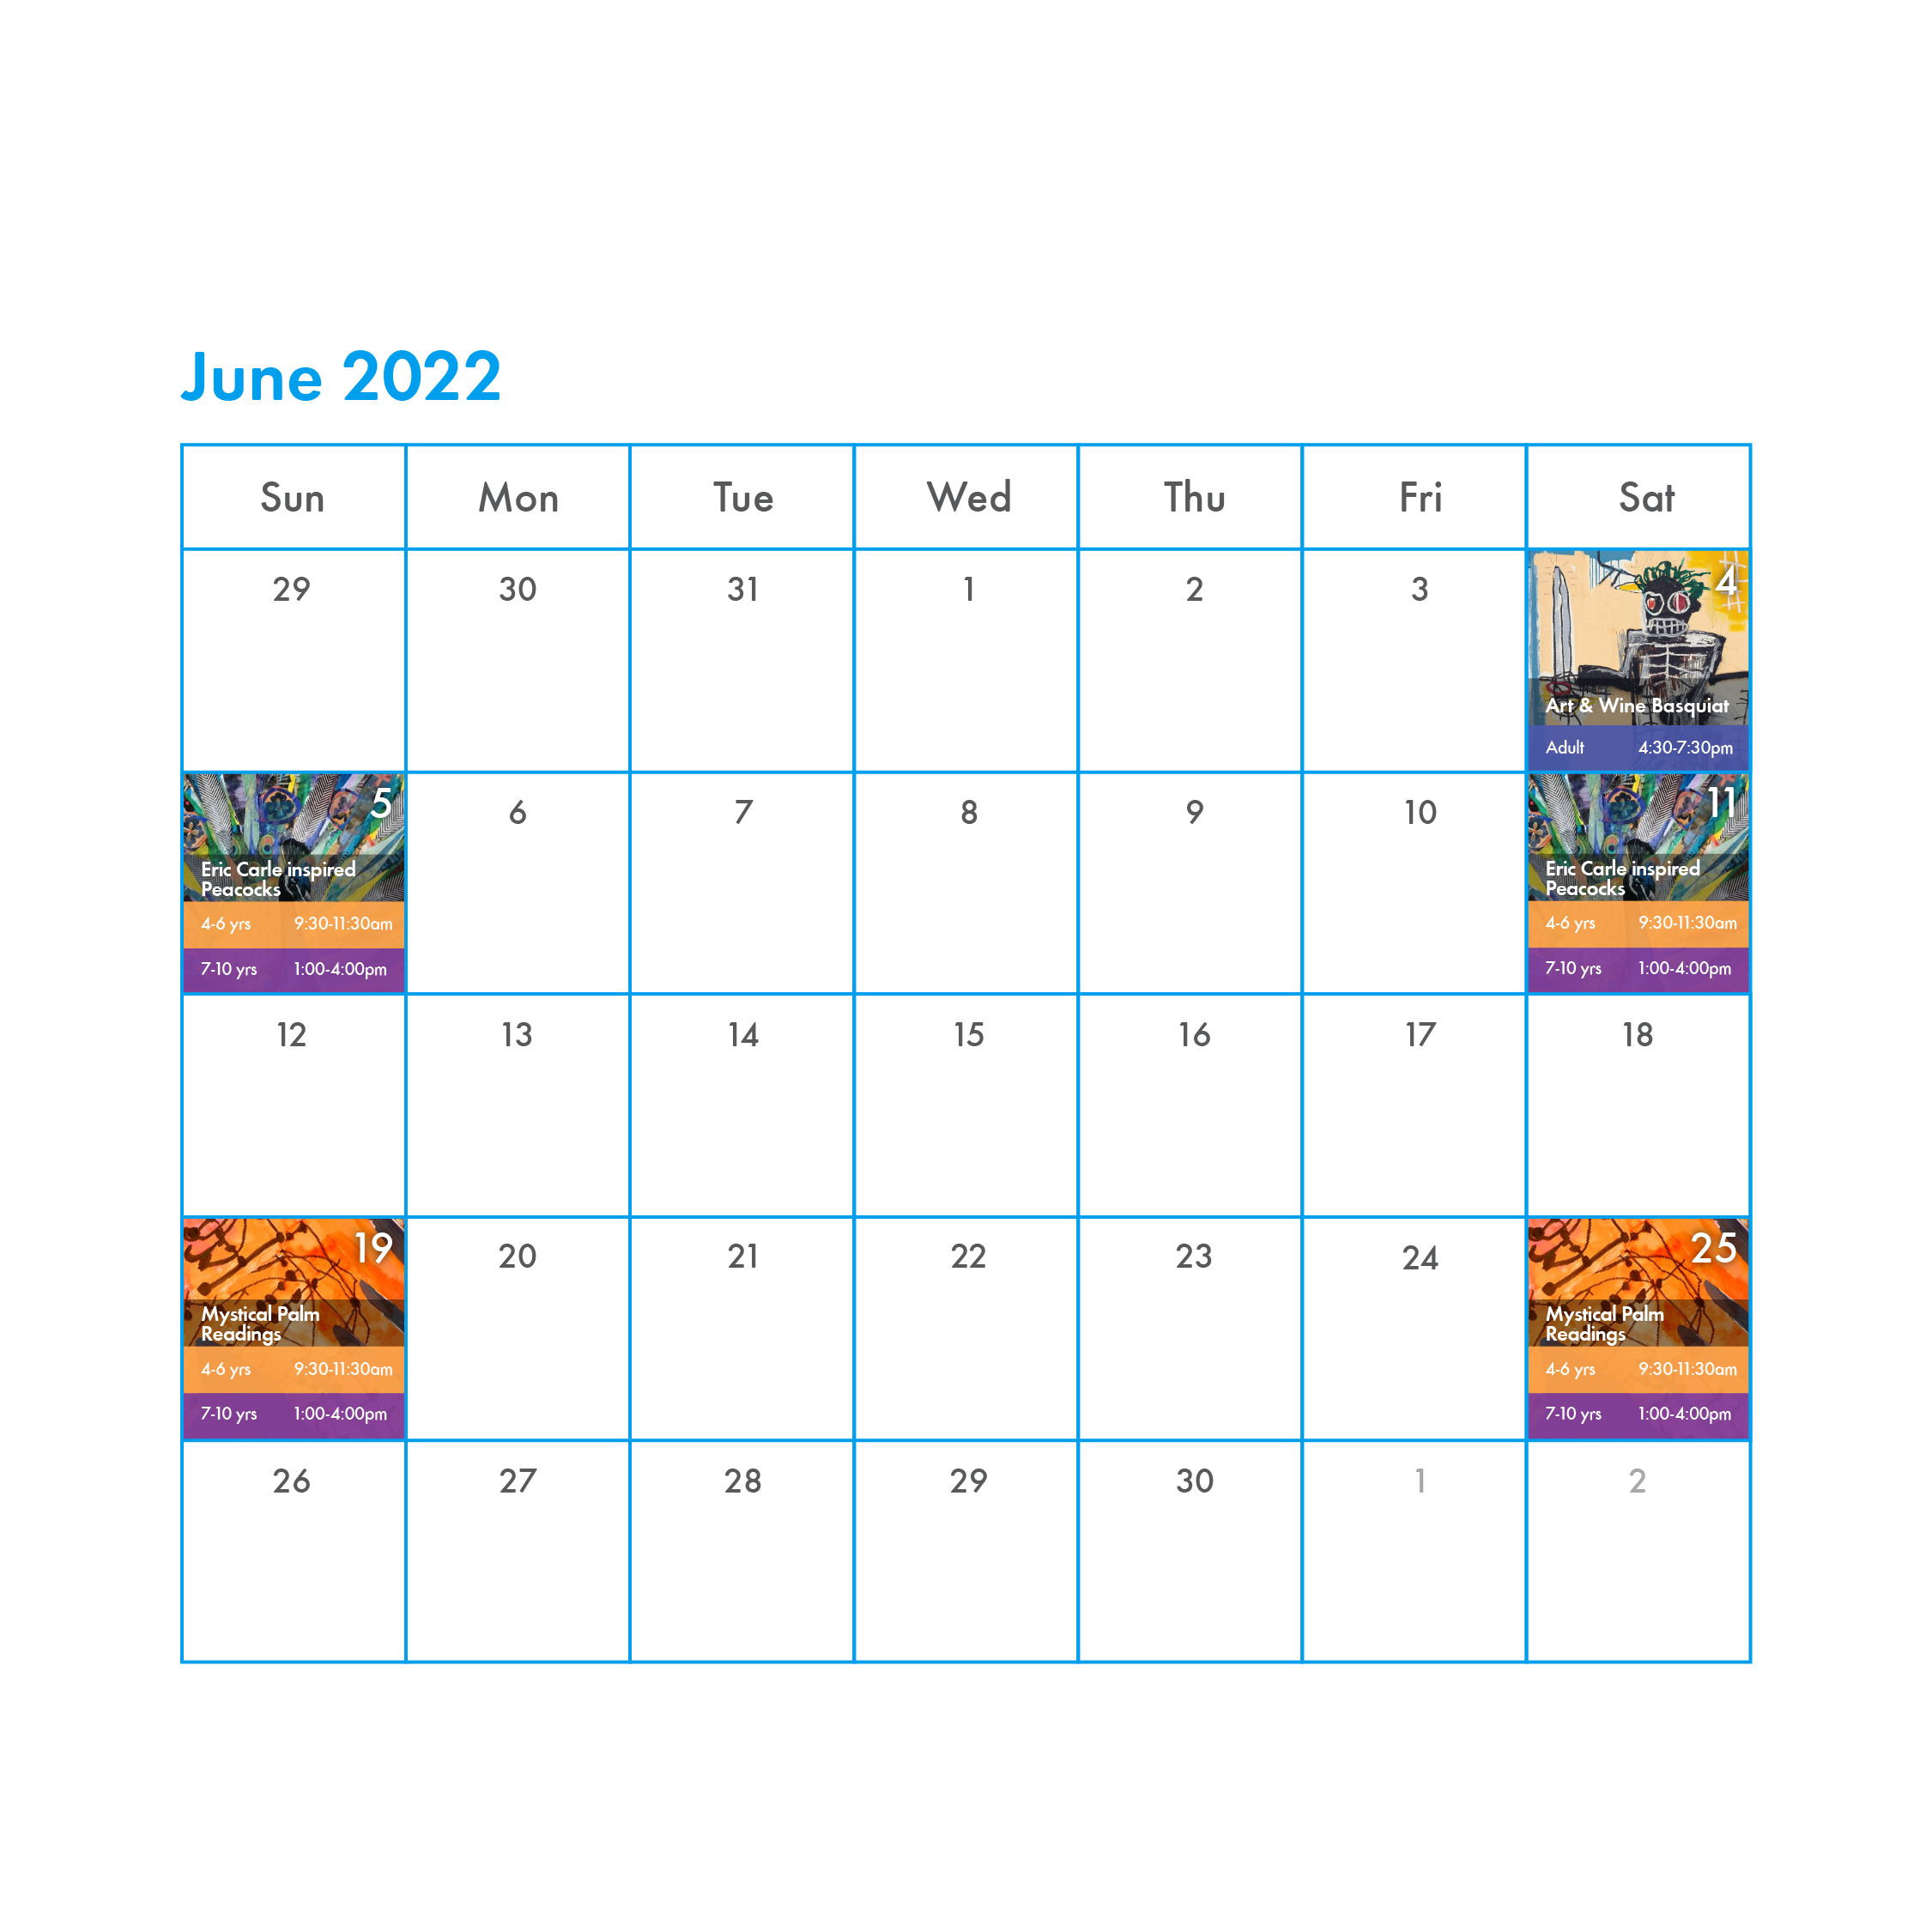 20220412_PSOA_Website calendar_June 2022